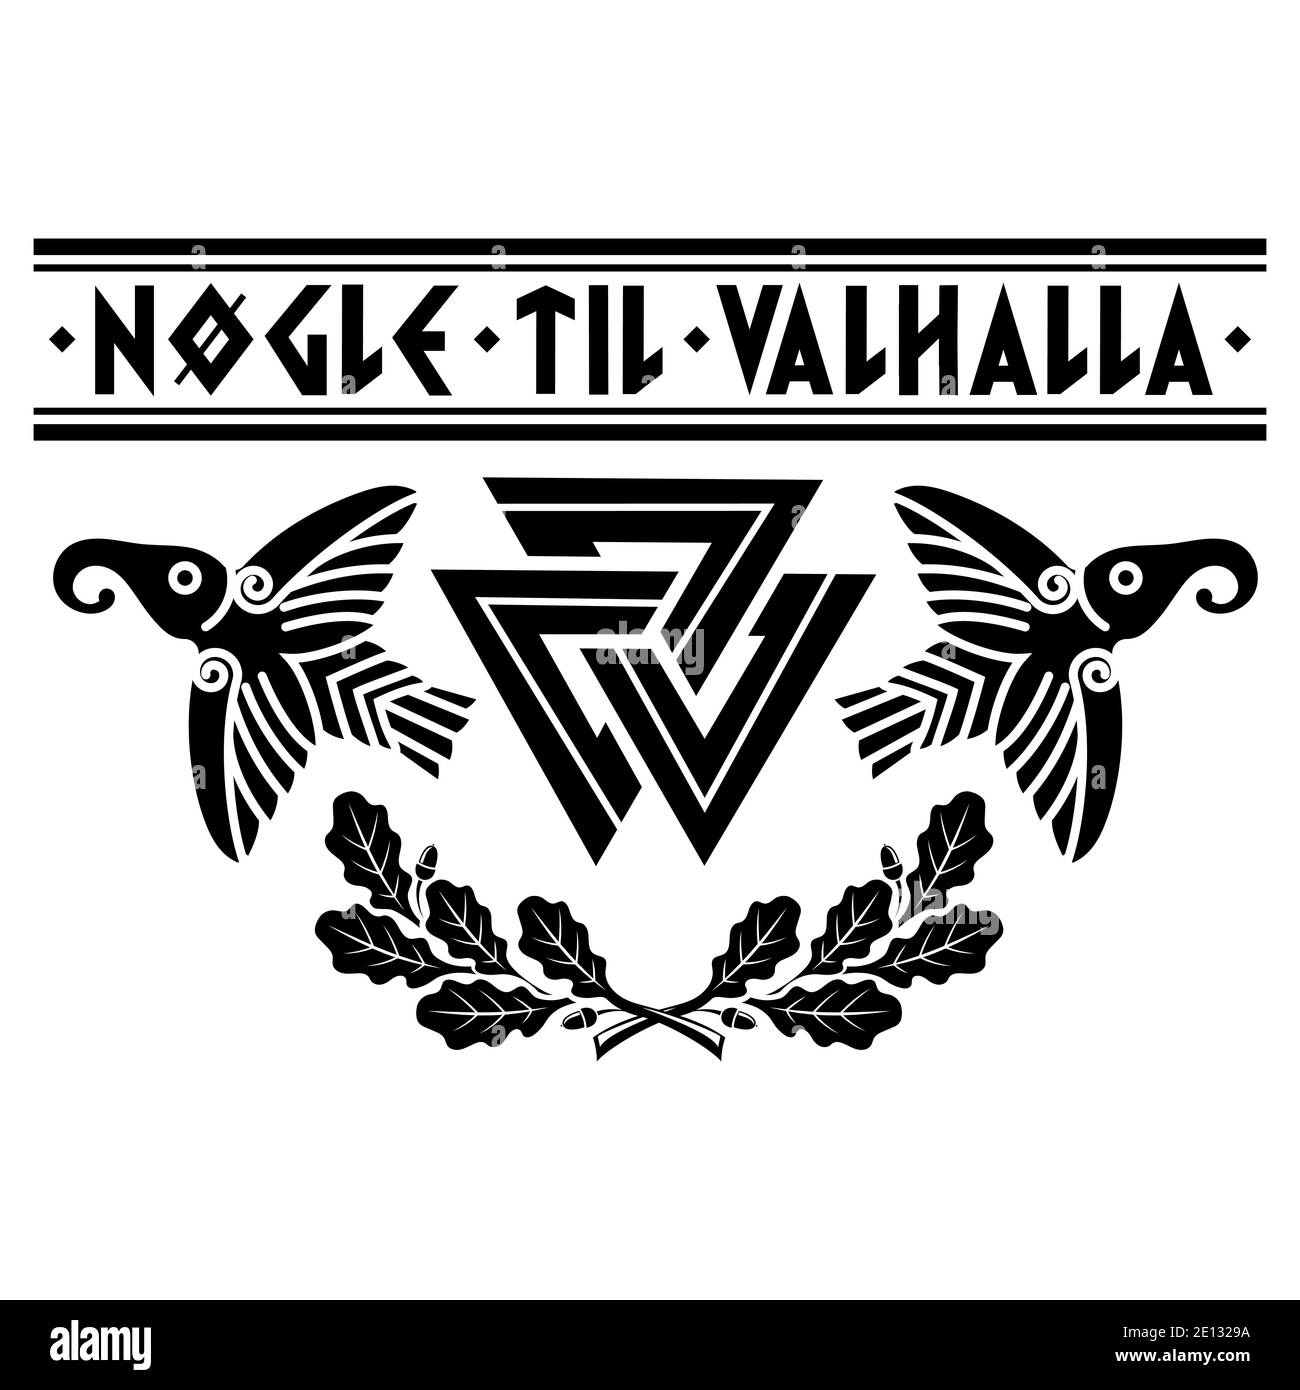 Valknut ancien païen symbole germanique nordique, anciennes runes scandinaves, slogan Viking - les clés de Valhalla, feuilles de chêne et deux corbeaux Illustration de Vecteur